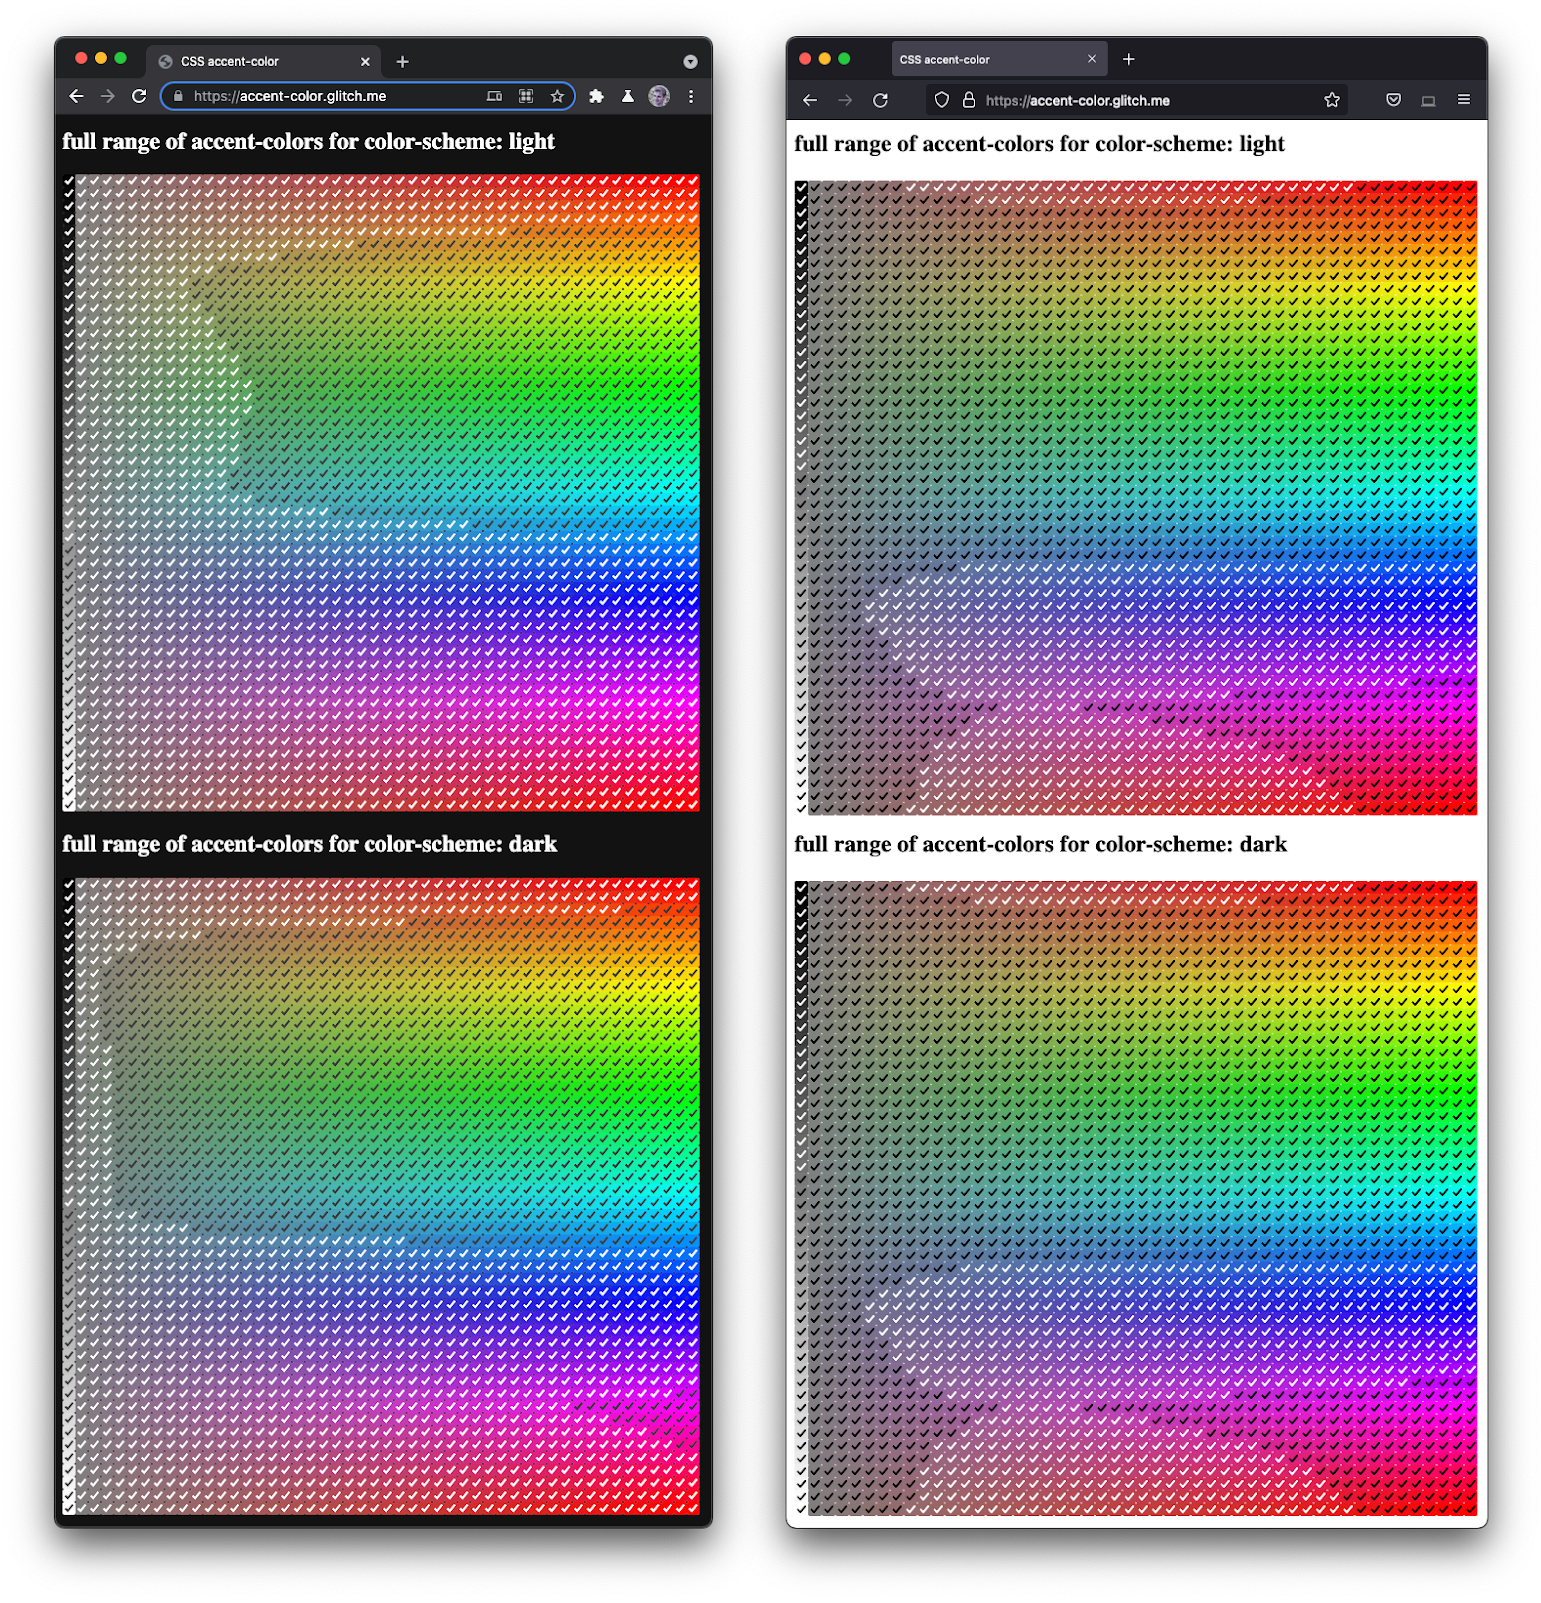 Firefox と Chromium を並べたスクリーンショット
  さまざまな色合いと暗さで多彩なチェックボックスをレンダリングしています。